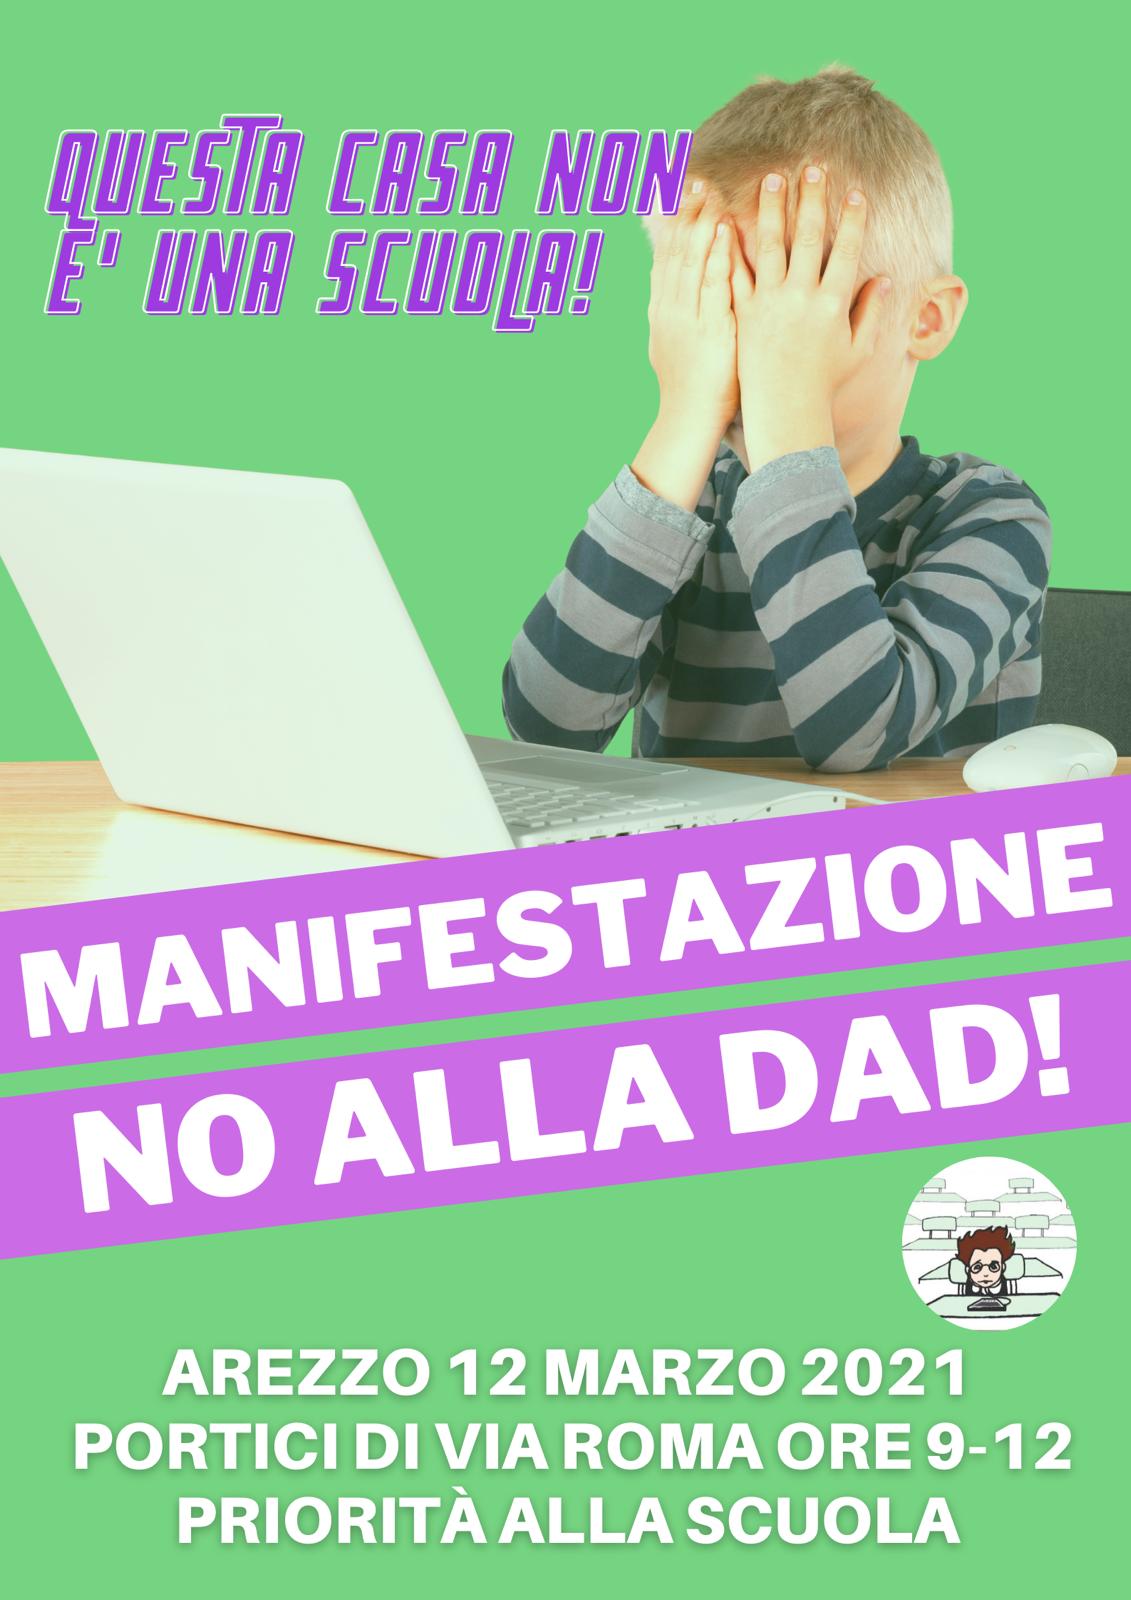 Manifestazione “No alla Dad!” venerdì ai portici di Via Roma